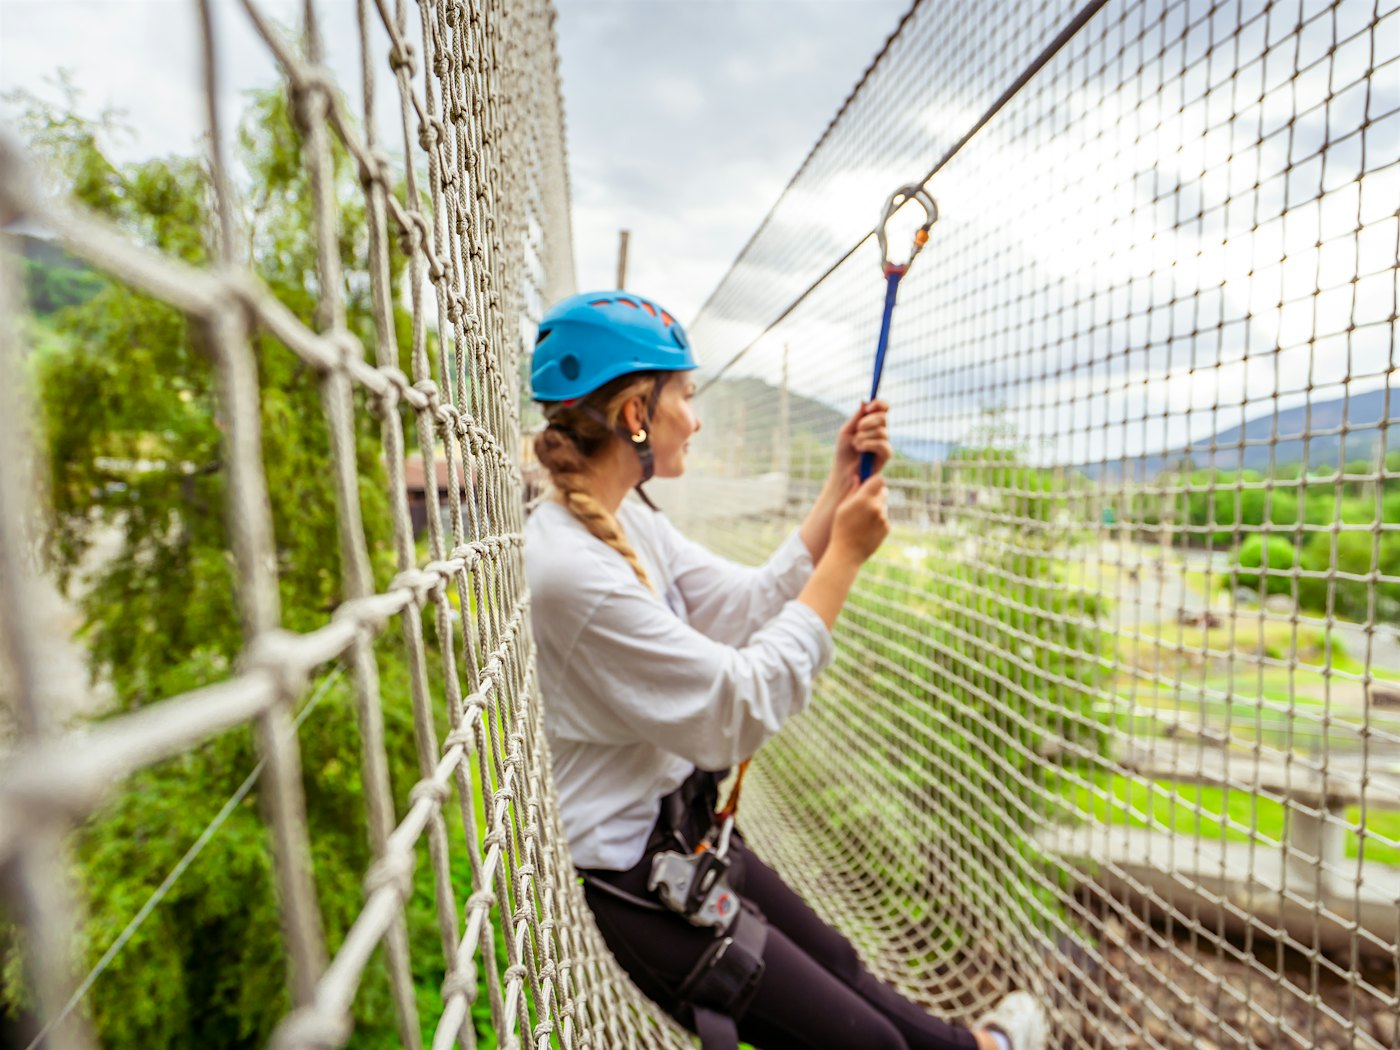 Kvinne med klatreutstyr lener seg i et nett  og ser utover utsikten.